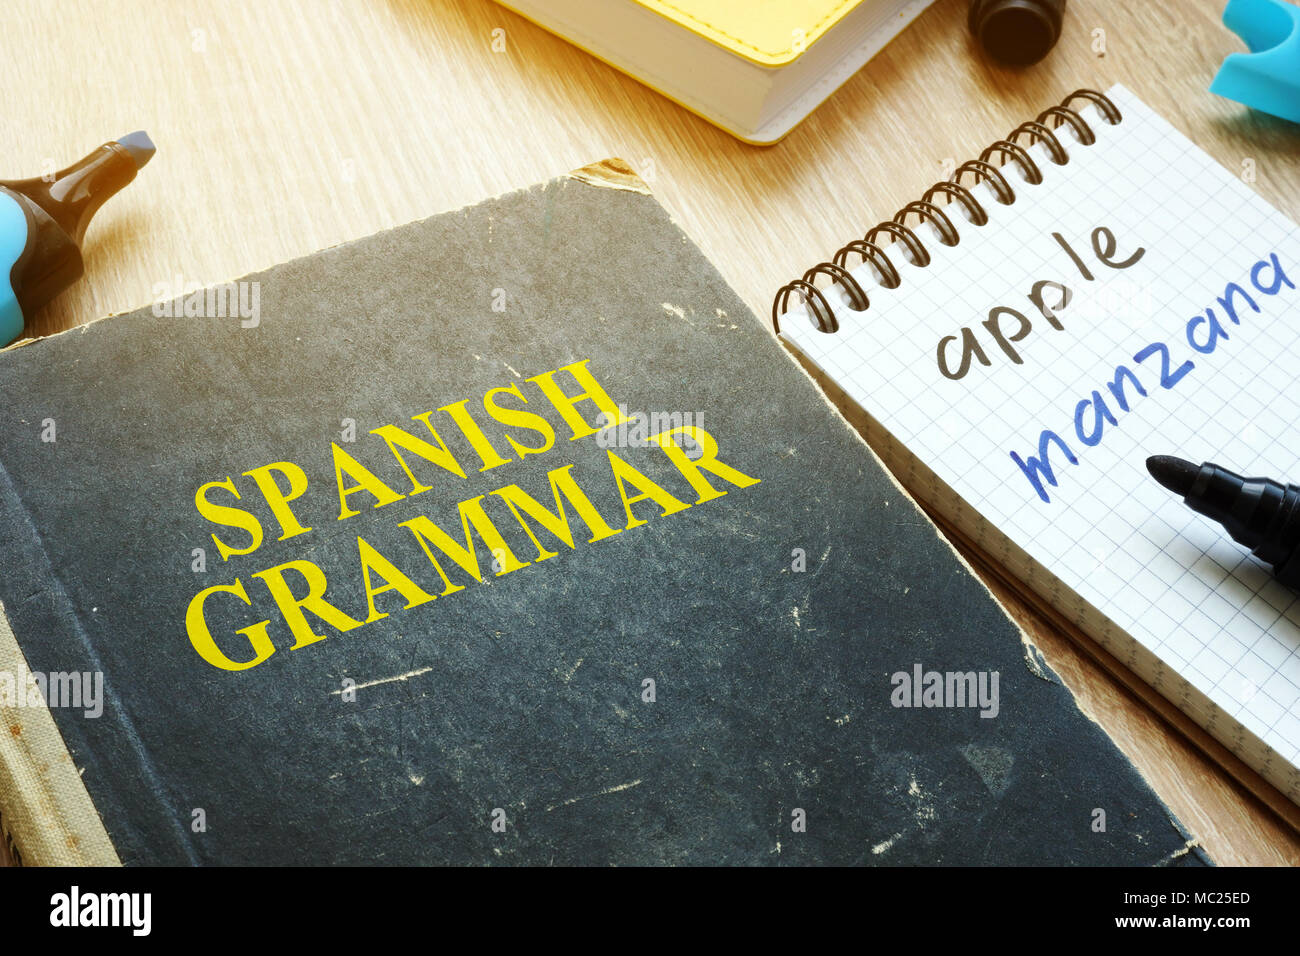 Apprendre espagnol grammaire concept. Livre et ordinateur portable sur un  bureau Photo Stock - Alamy